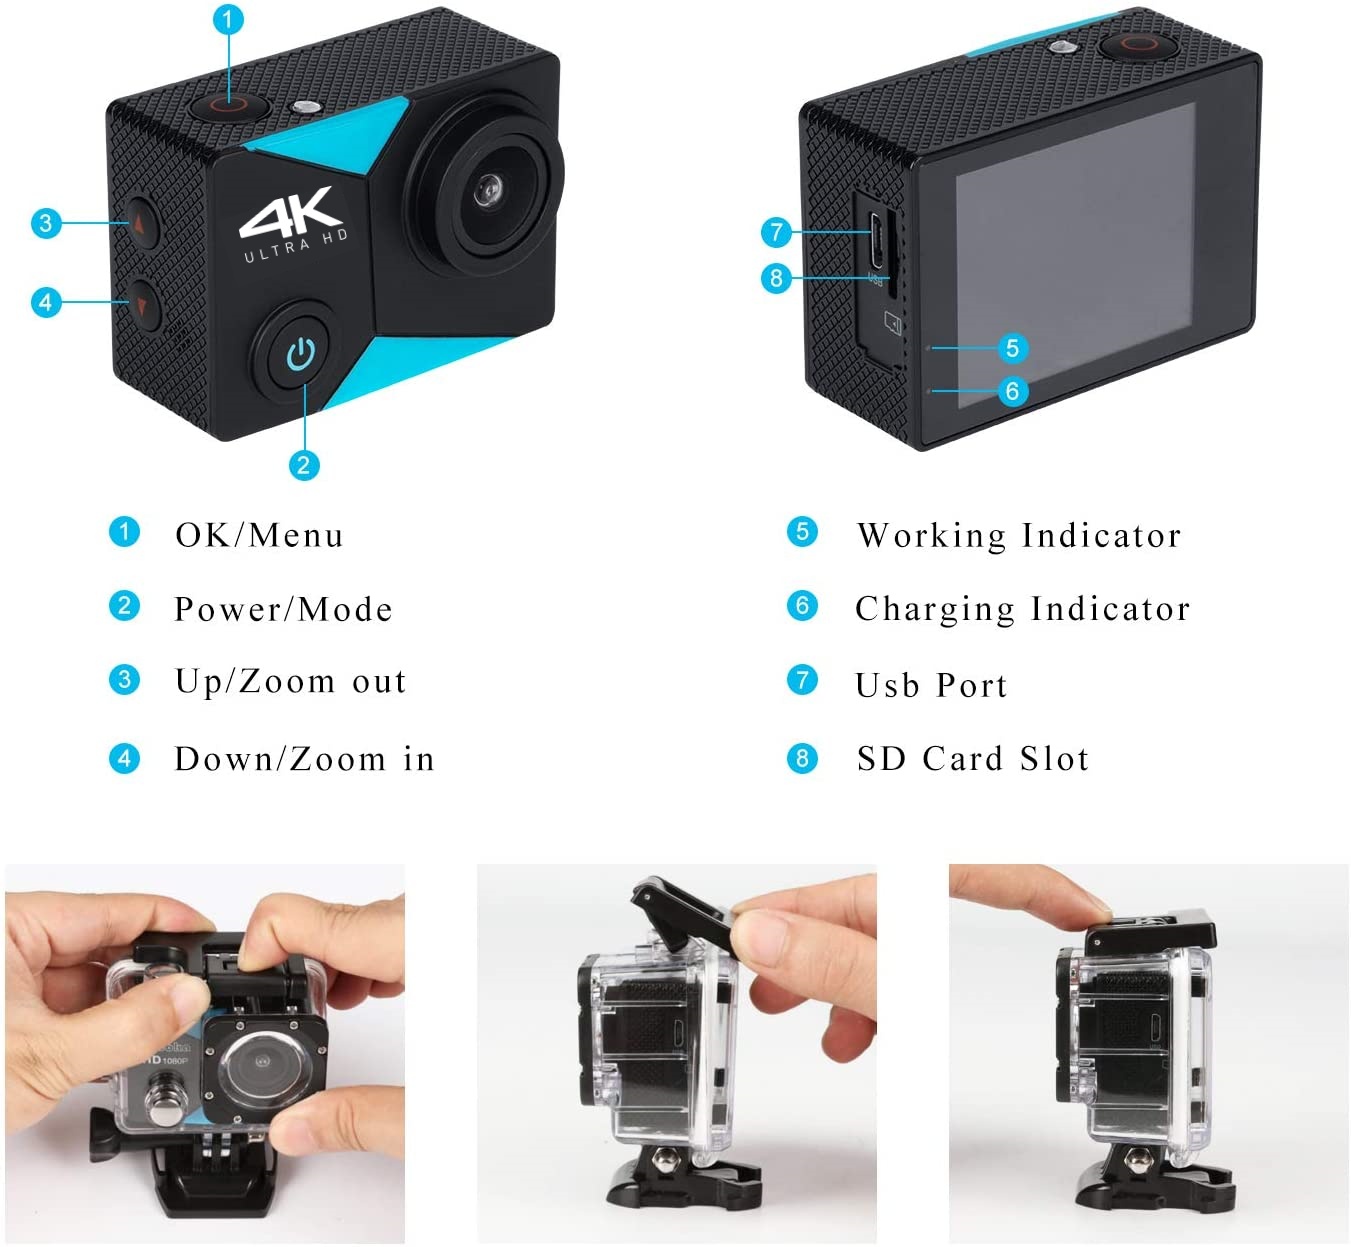 รูปภาพรายละเอียดของ กล้องแอ็คชั่นแคม มีระบบกันสั่นล่าสุด กล้องติดหมวก กล้องกันน้ำ กันน้ำ 2.0" LCD 4K สีดำ รุ่น K80 Free Remote และ ไมค์ 1 ชุด